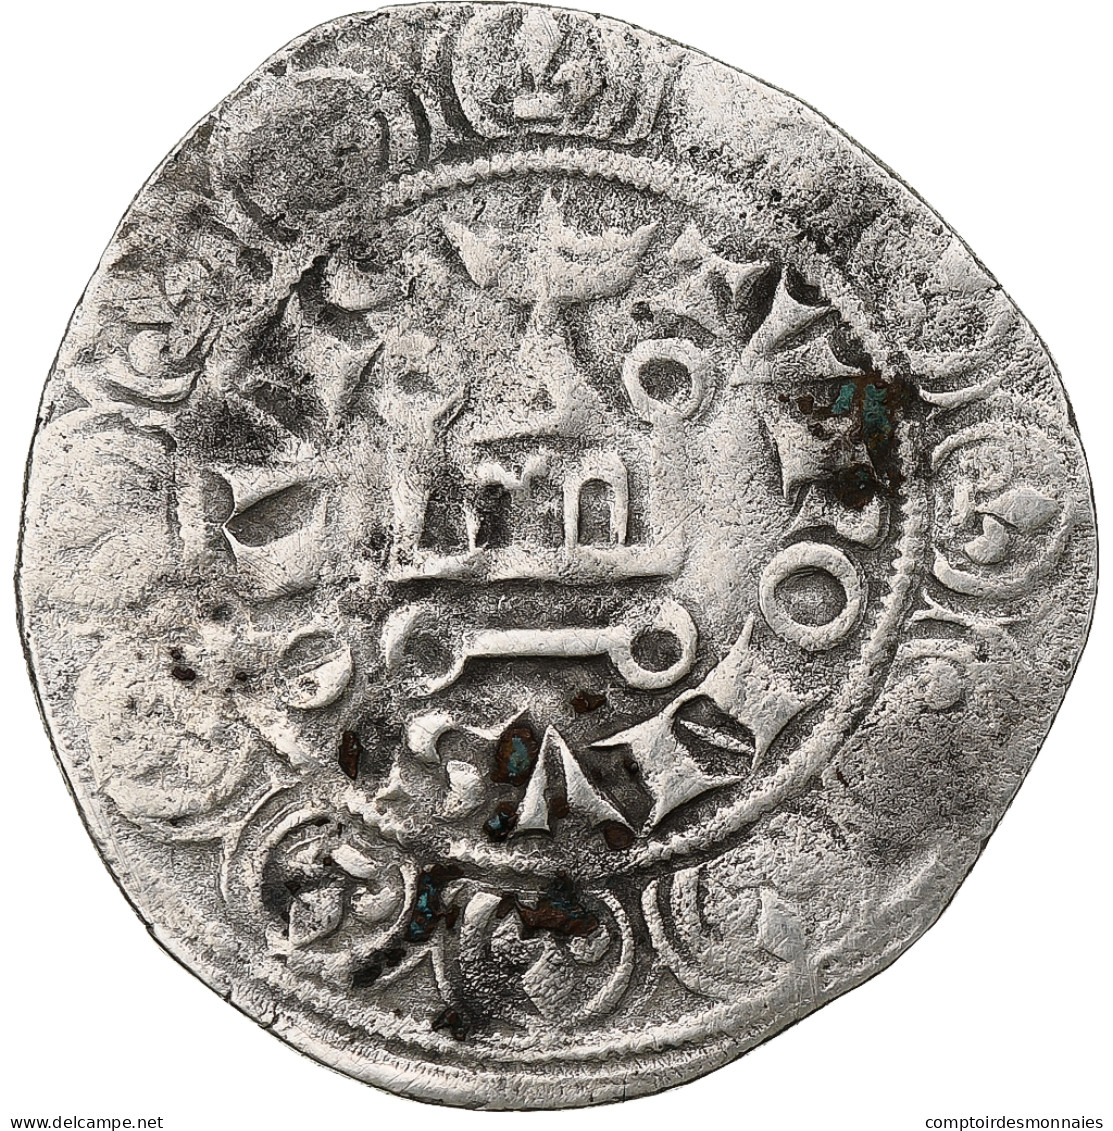 France, Philippe VI, Gros à La Queue, 1348-1350, Billon, TB+, Duplessy:265 - 1328-1350 Filips VI